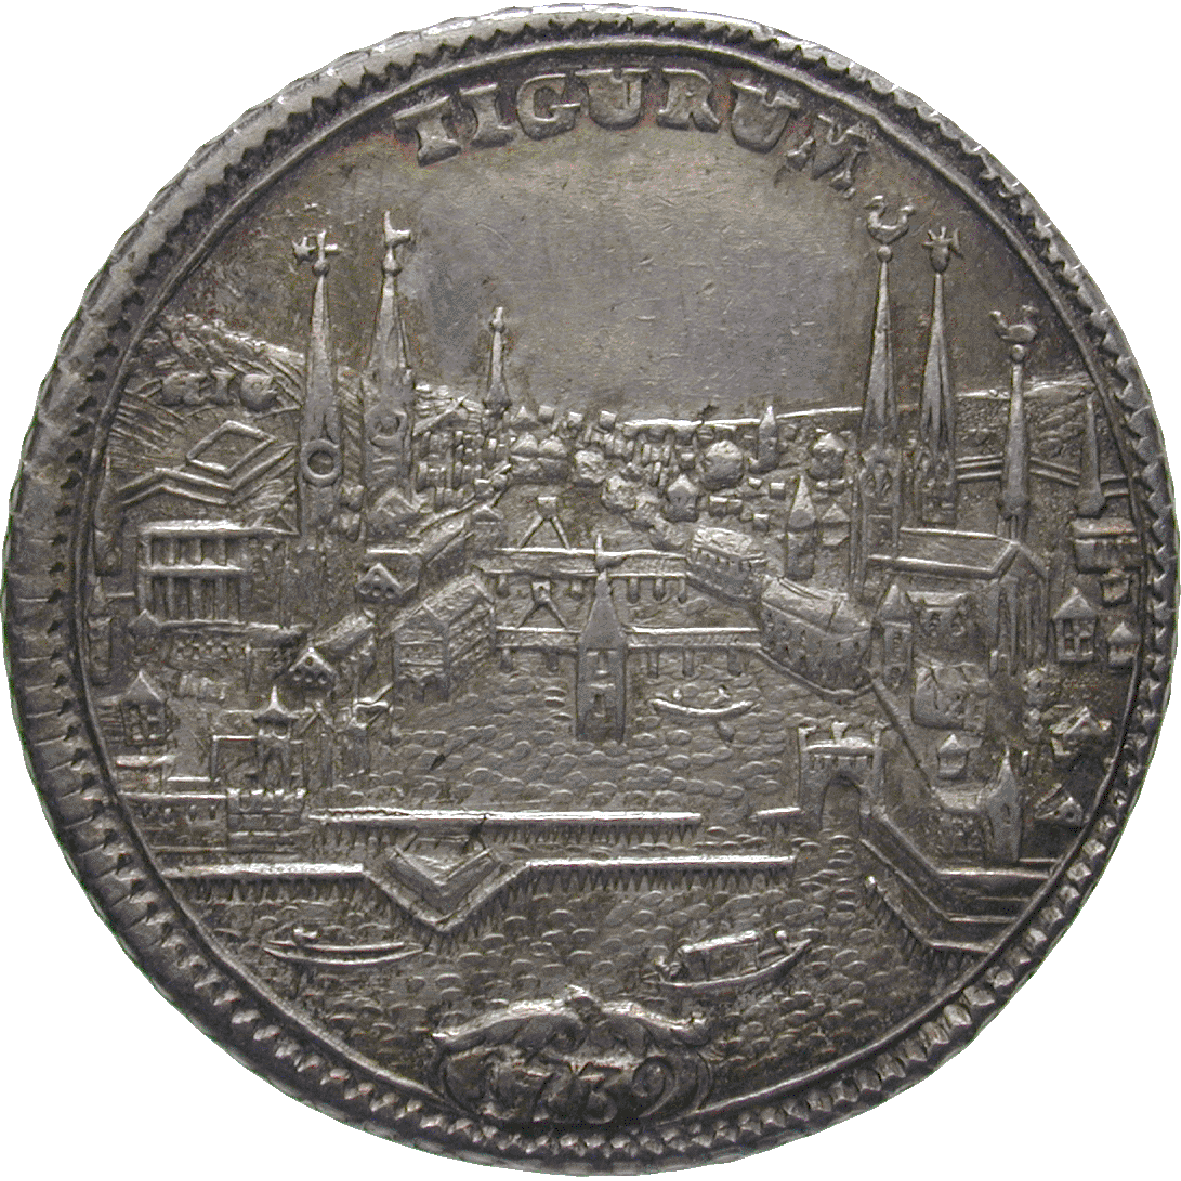 Republik Zürich, 1/2 Taler 1739 (reverse)